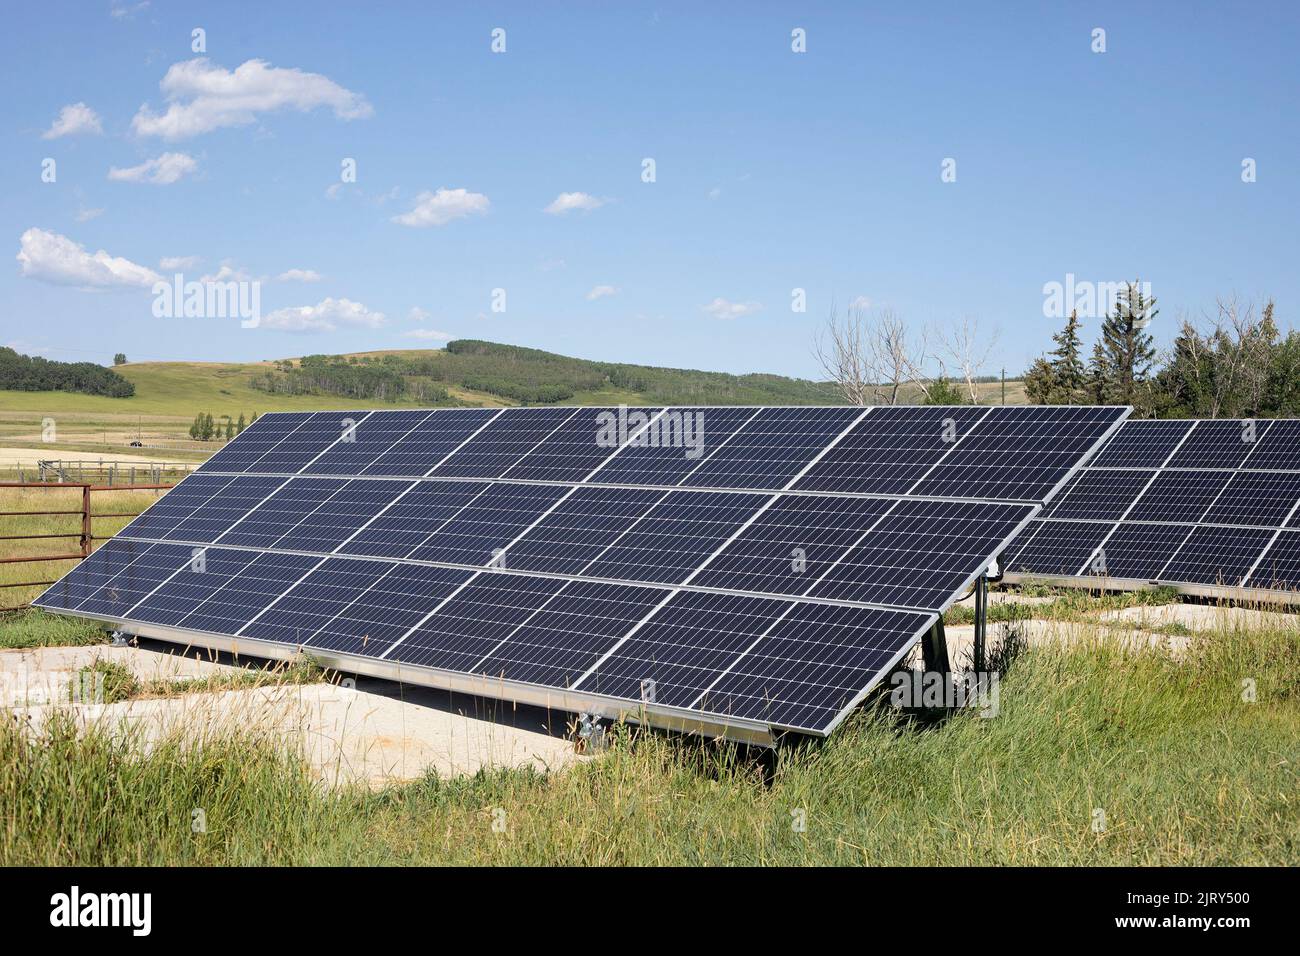 Paneles solares en un día soleado. El sistema solar fotovoltaico proporciona energía renovable para una granja de permacultura en la zona rural de Alberta, Canadá Foto de stock